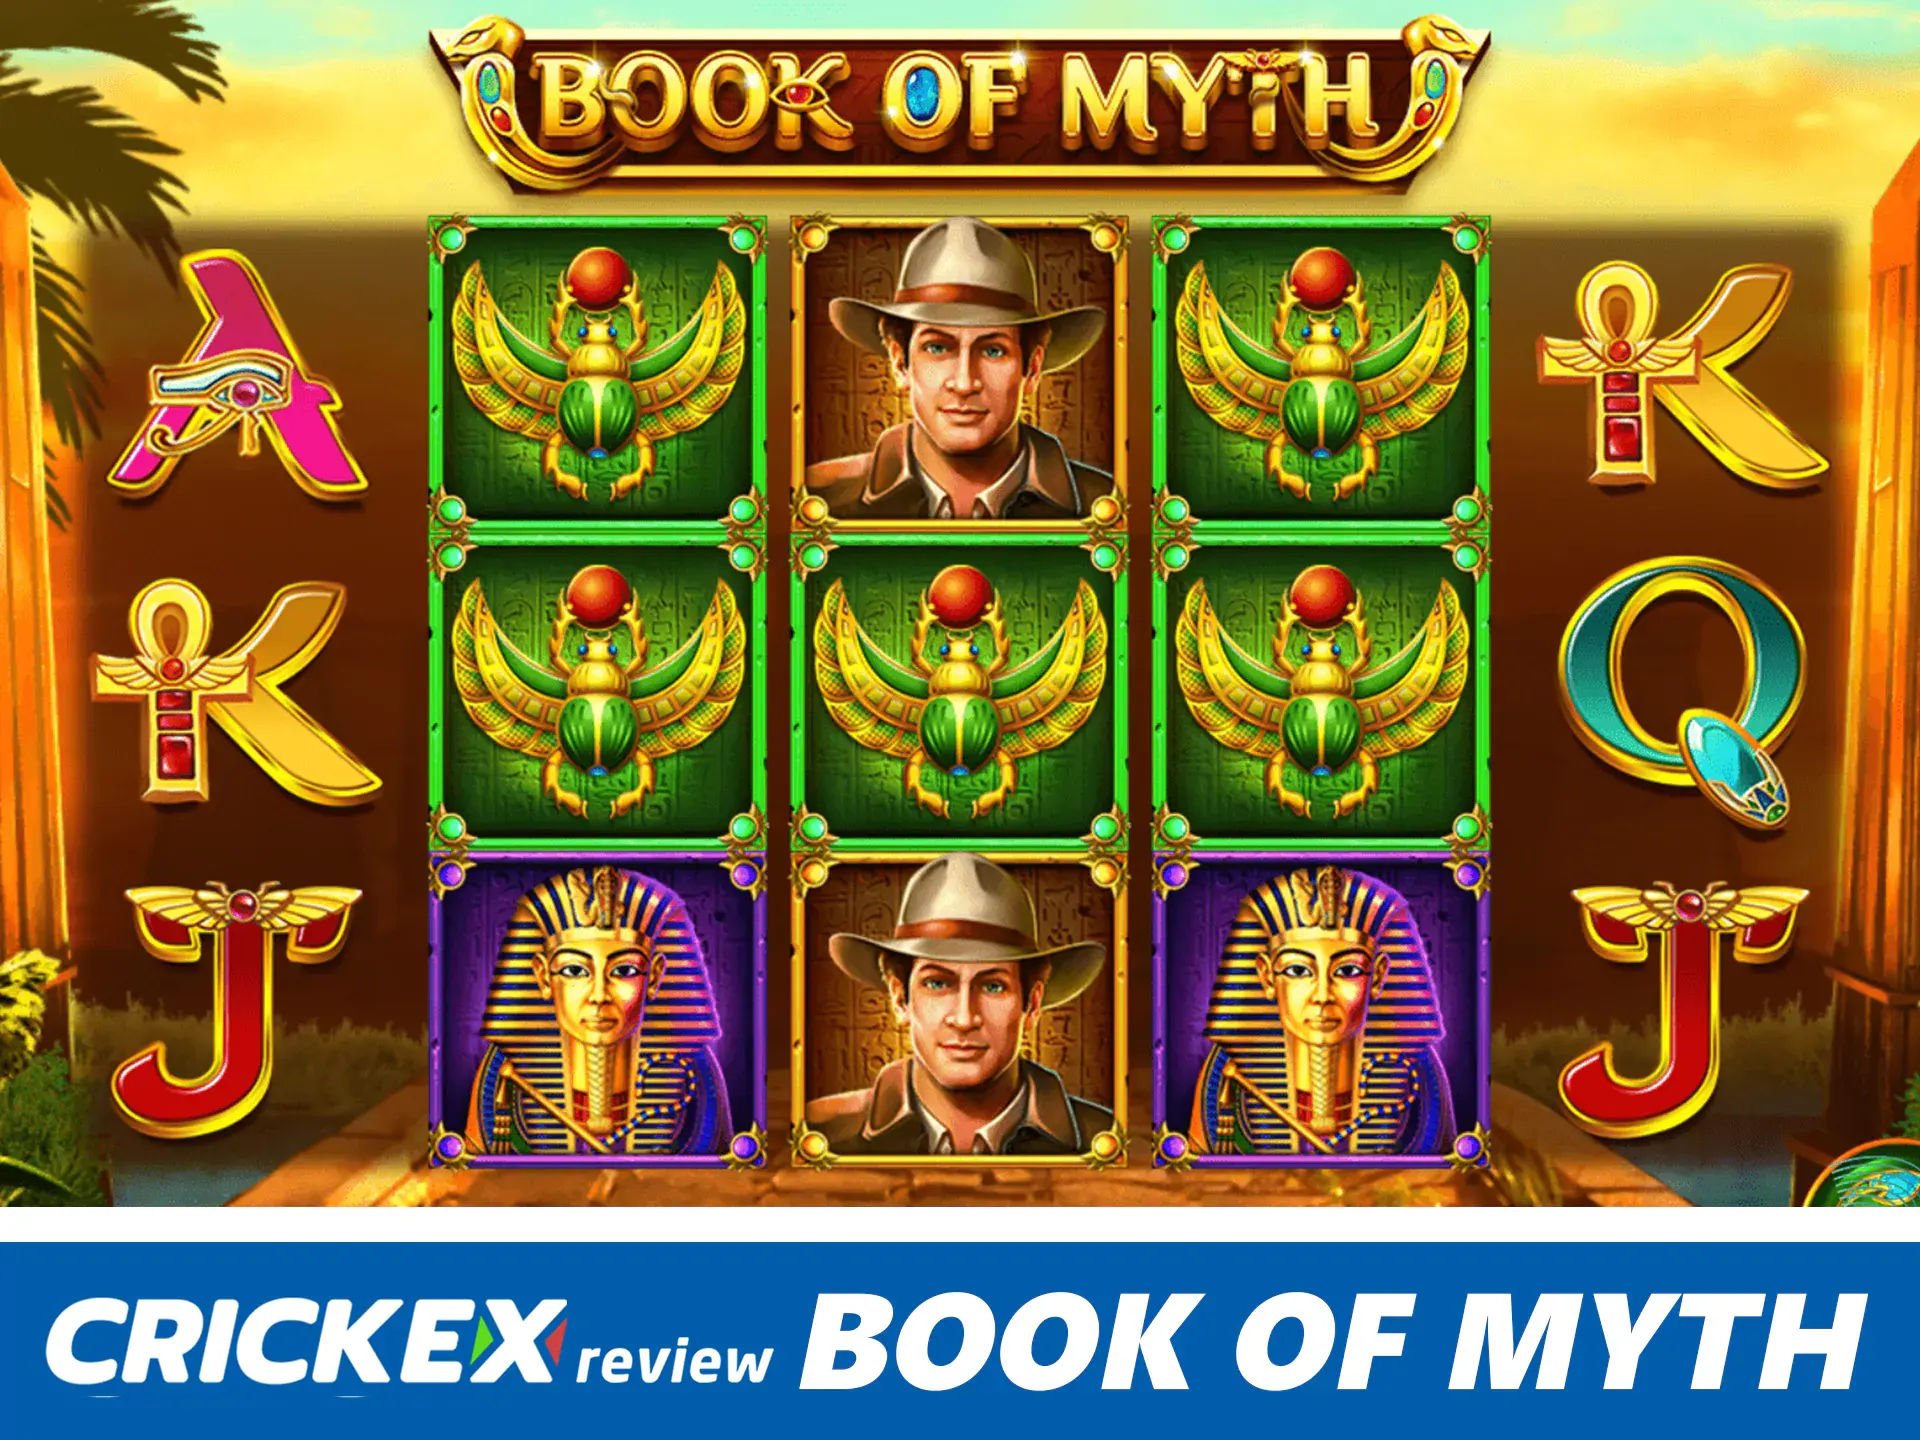 Win big prizes at book of myth slots.